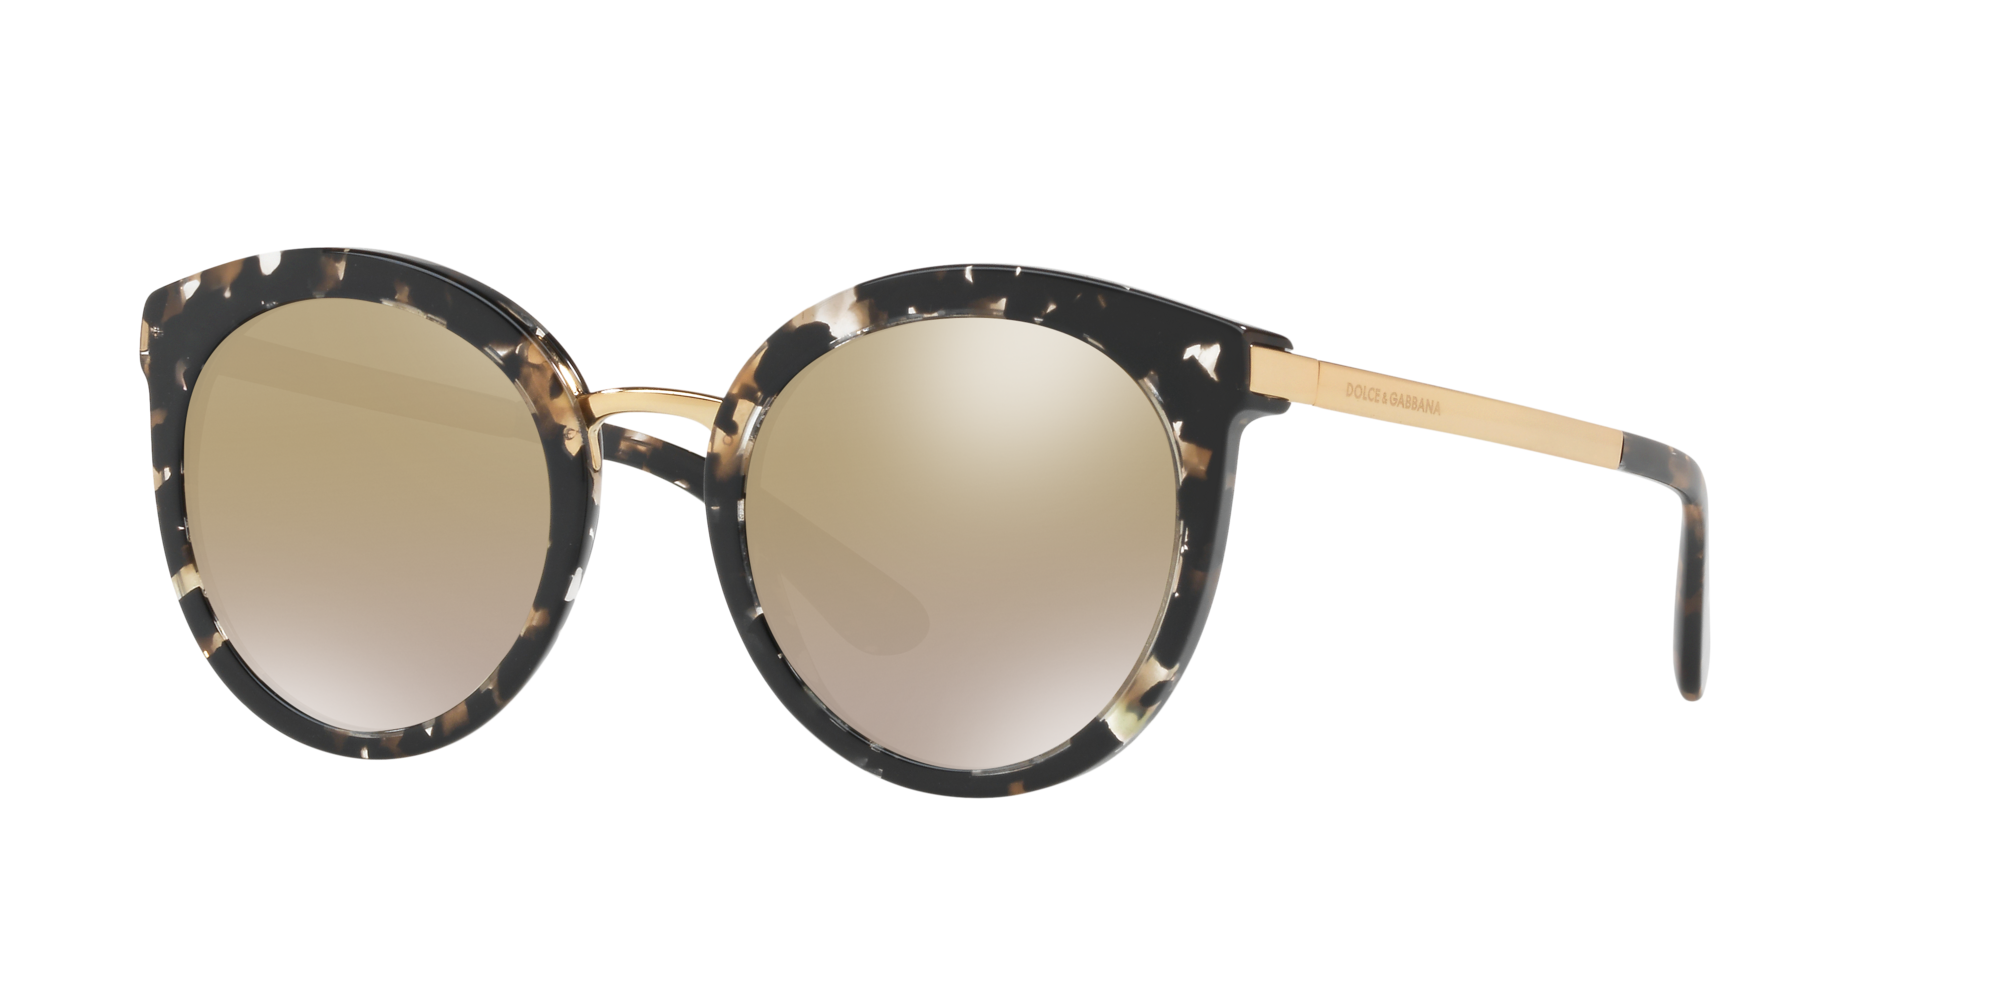 Consulte nosso catálogo de Óculos de Sol Dolce e Gabbana Eyewear com diversos modelos e preços para sua escolha.